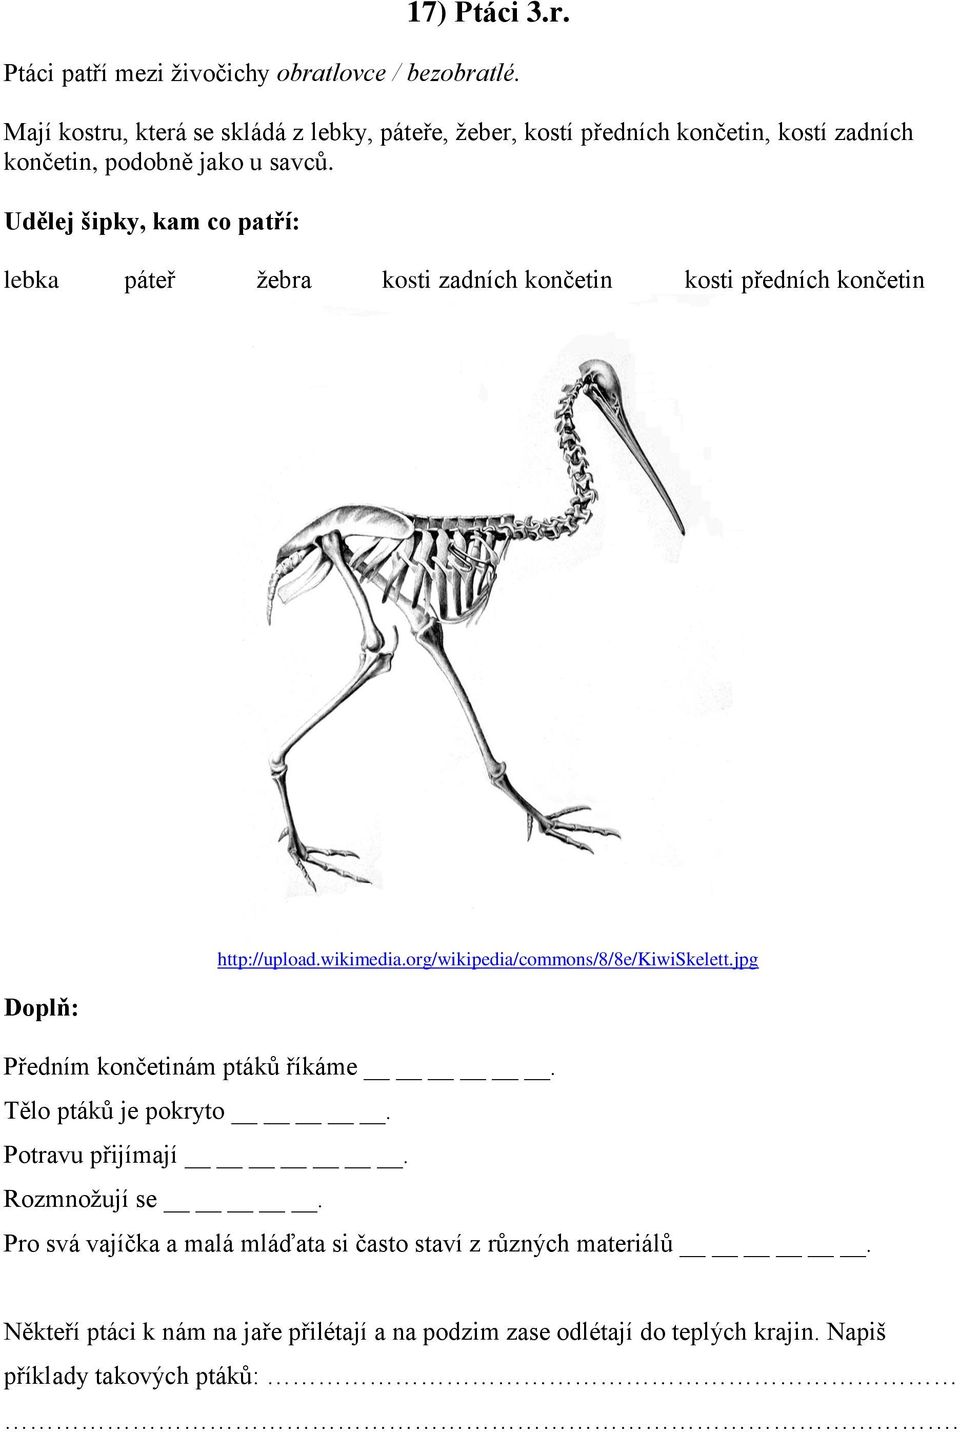 Udělej šipky, kam co patří: lebka páteř žebra kosti zadních končetin kosti předních končetin http://upload.wikimedia.org/wikipedia/commons/8/8e/kiwiskelett.